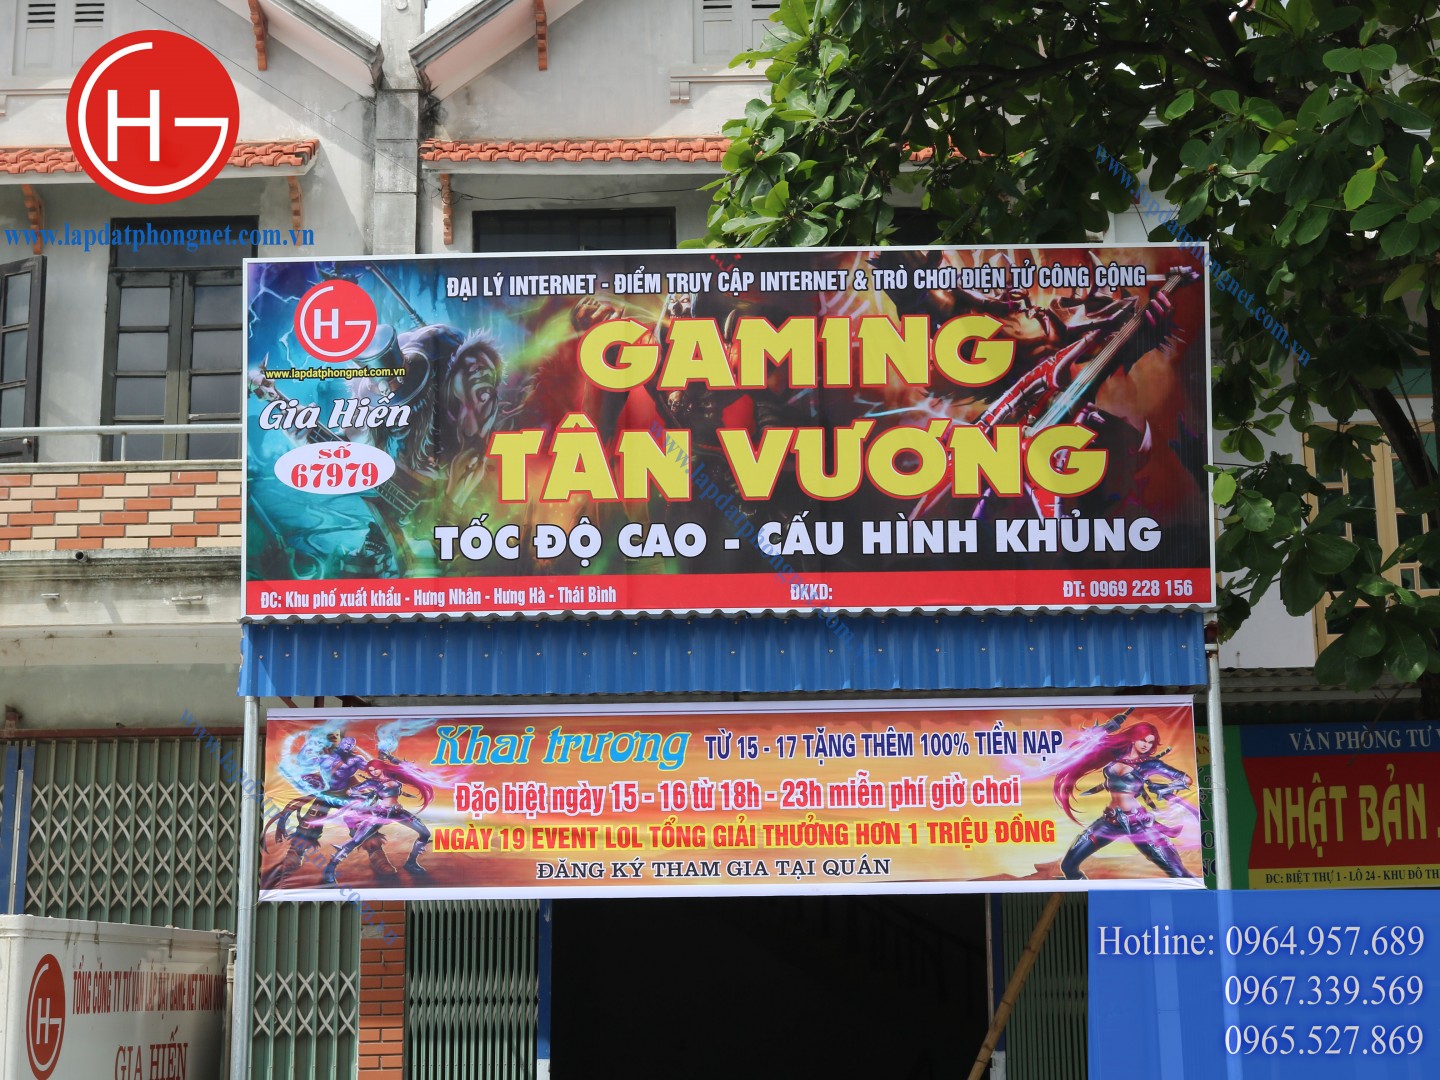 Lắp đặt phòng game giá rẻ cho anh Vương tại Thái Bình